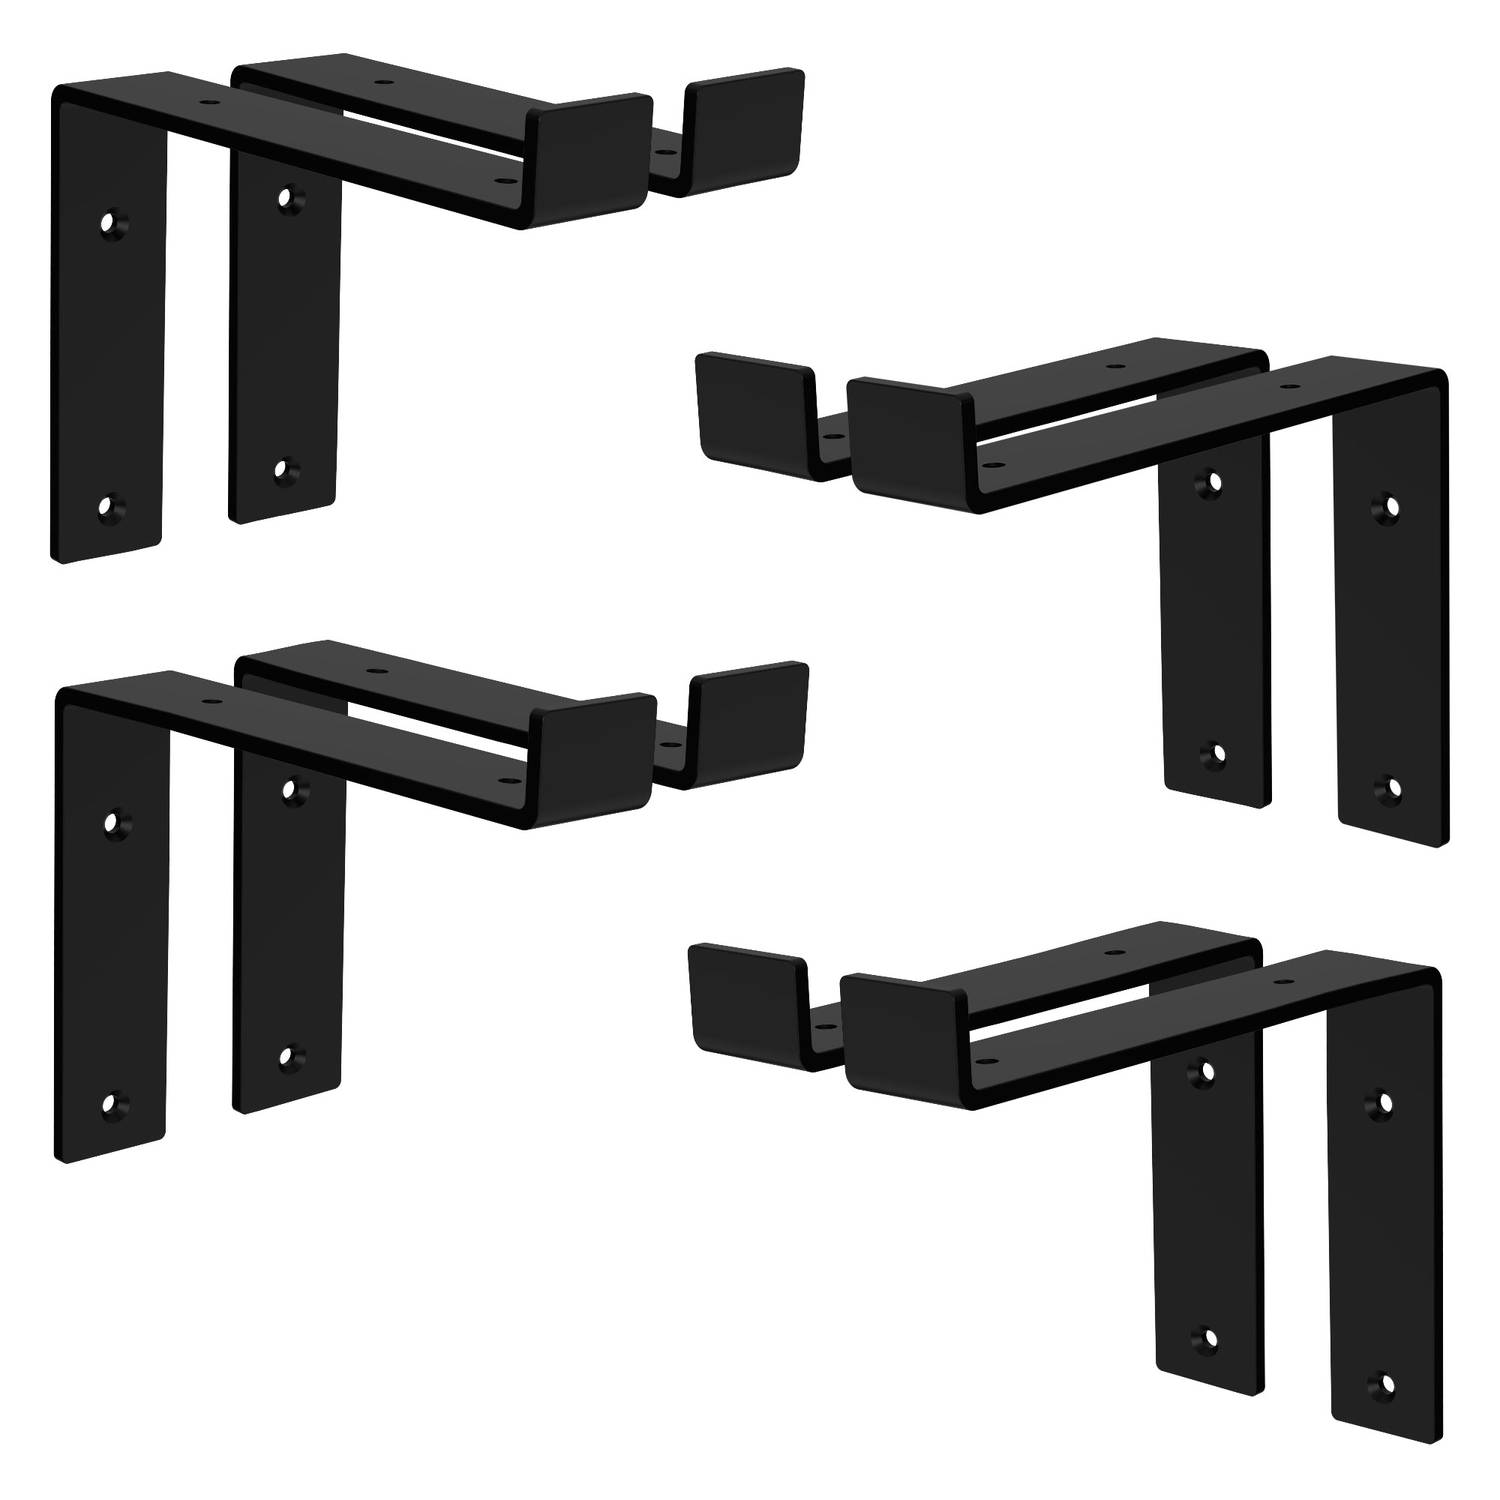 ML-Design 8 stuks plankbeugel 20x4x14,5 cm, zwart, metaal, 8 inch plankbeugels, industriële plankbeugels, planksteun voor wandmontage, 90 graden wandbeugel, L-vormige wandplank, in